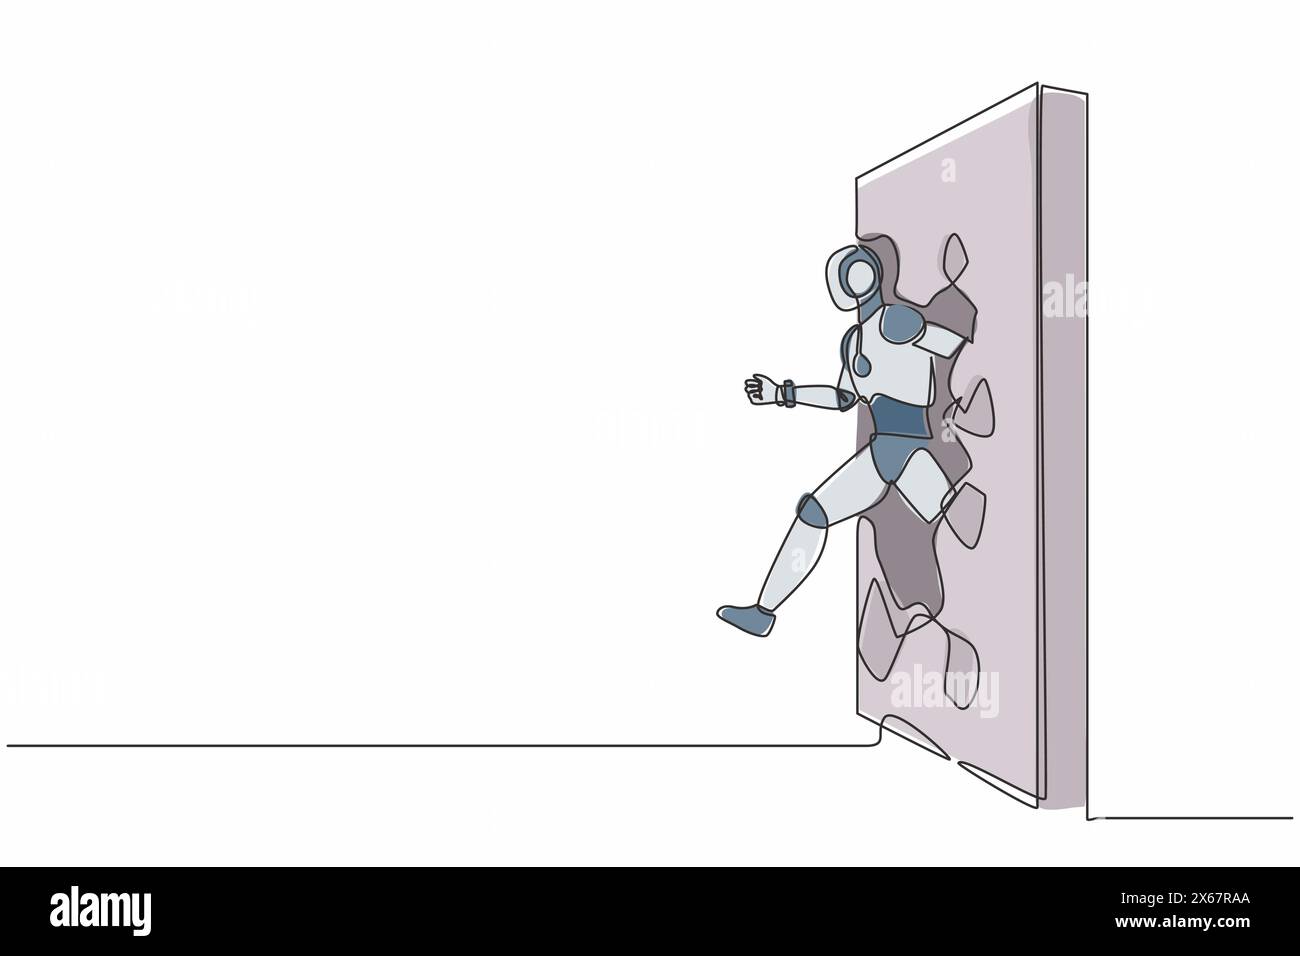 Ein einzelner Zeilenroboter läuft und bricht durch eine Ziegelwand. Technologische Entwicklung der Zukunft. Künstliche Intelligenz und maschinelles Lernen. Kontin Stock Vektor